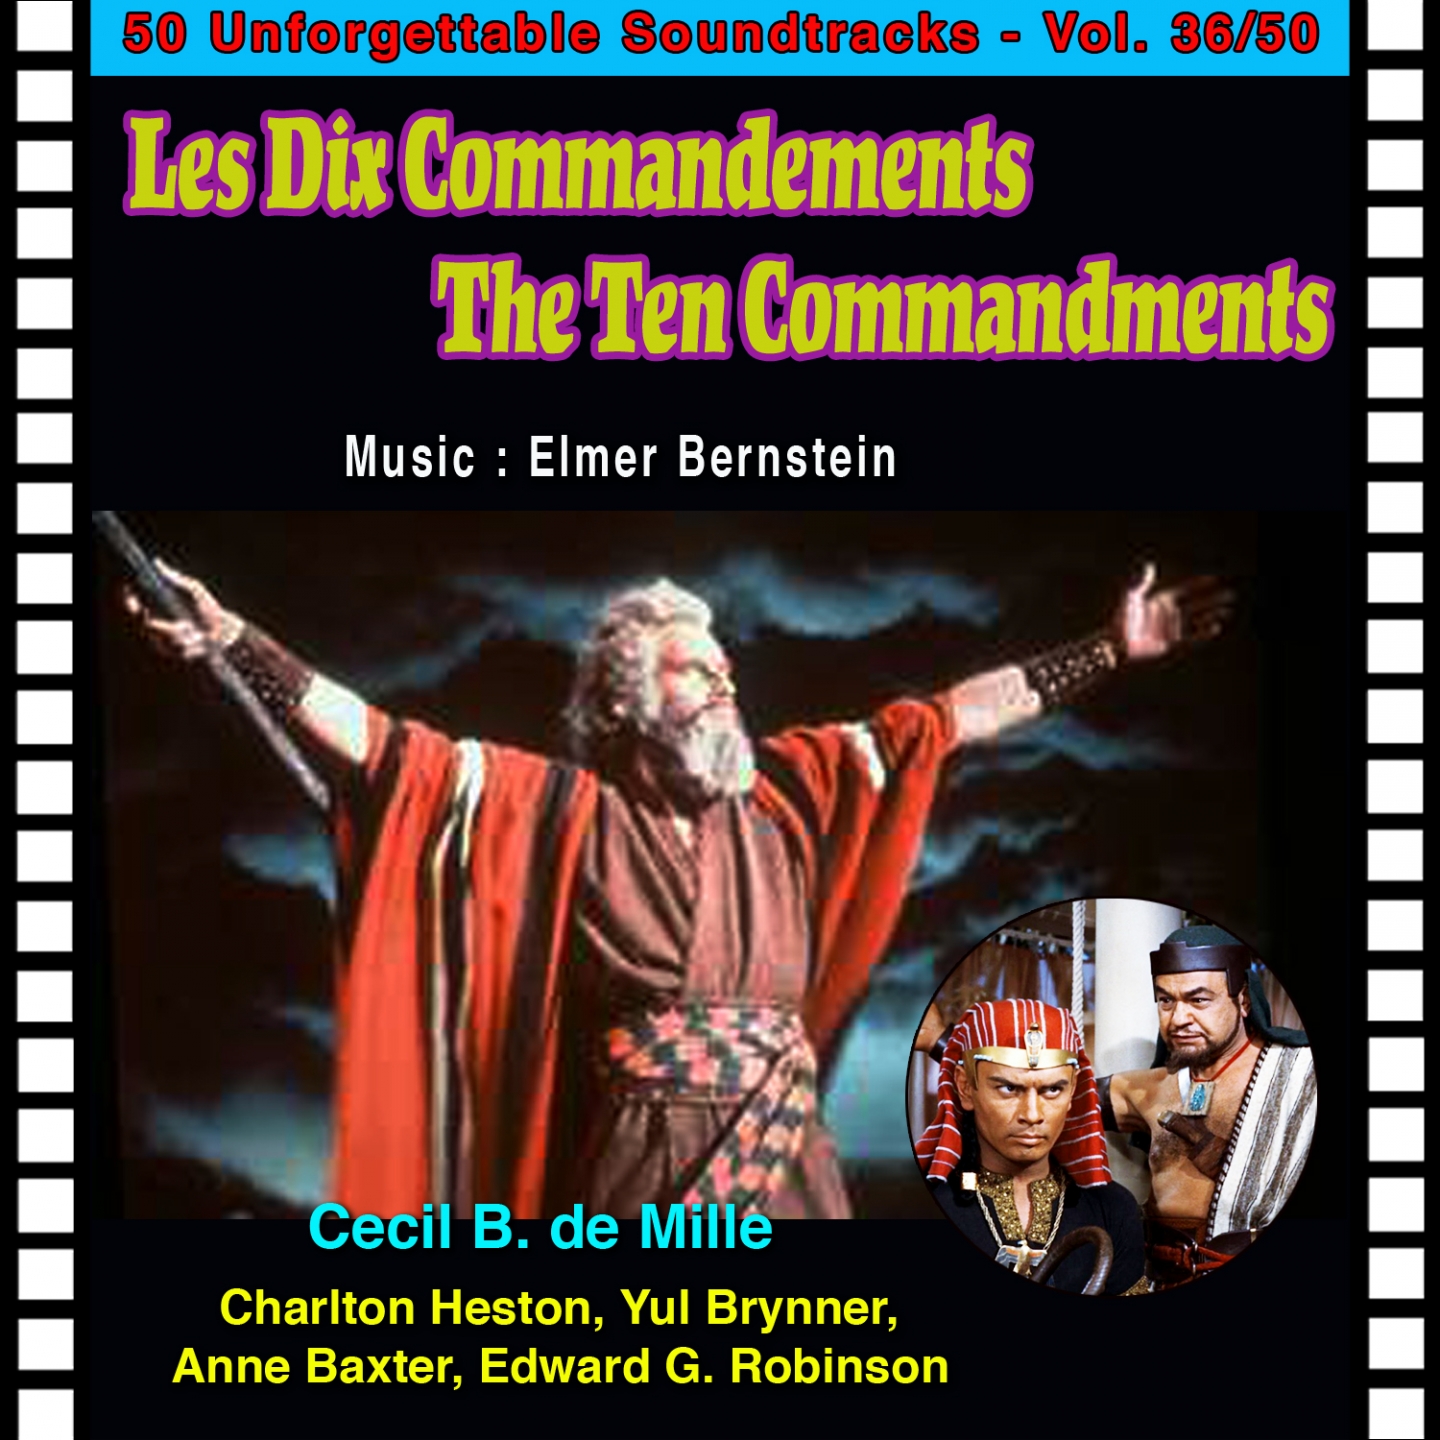 The Red Sea (Les Dix Commandements - The Ten Commandments)